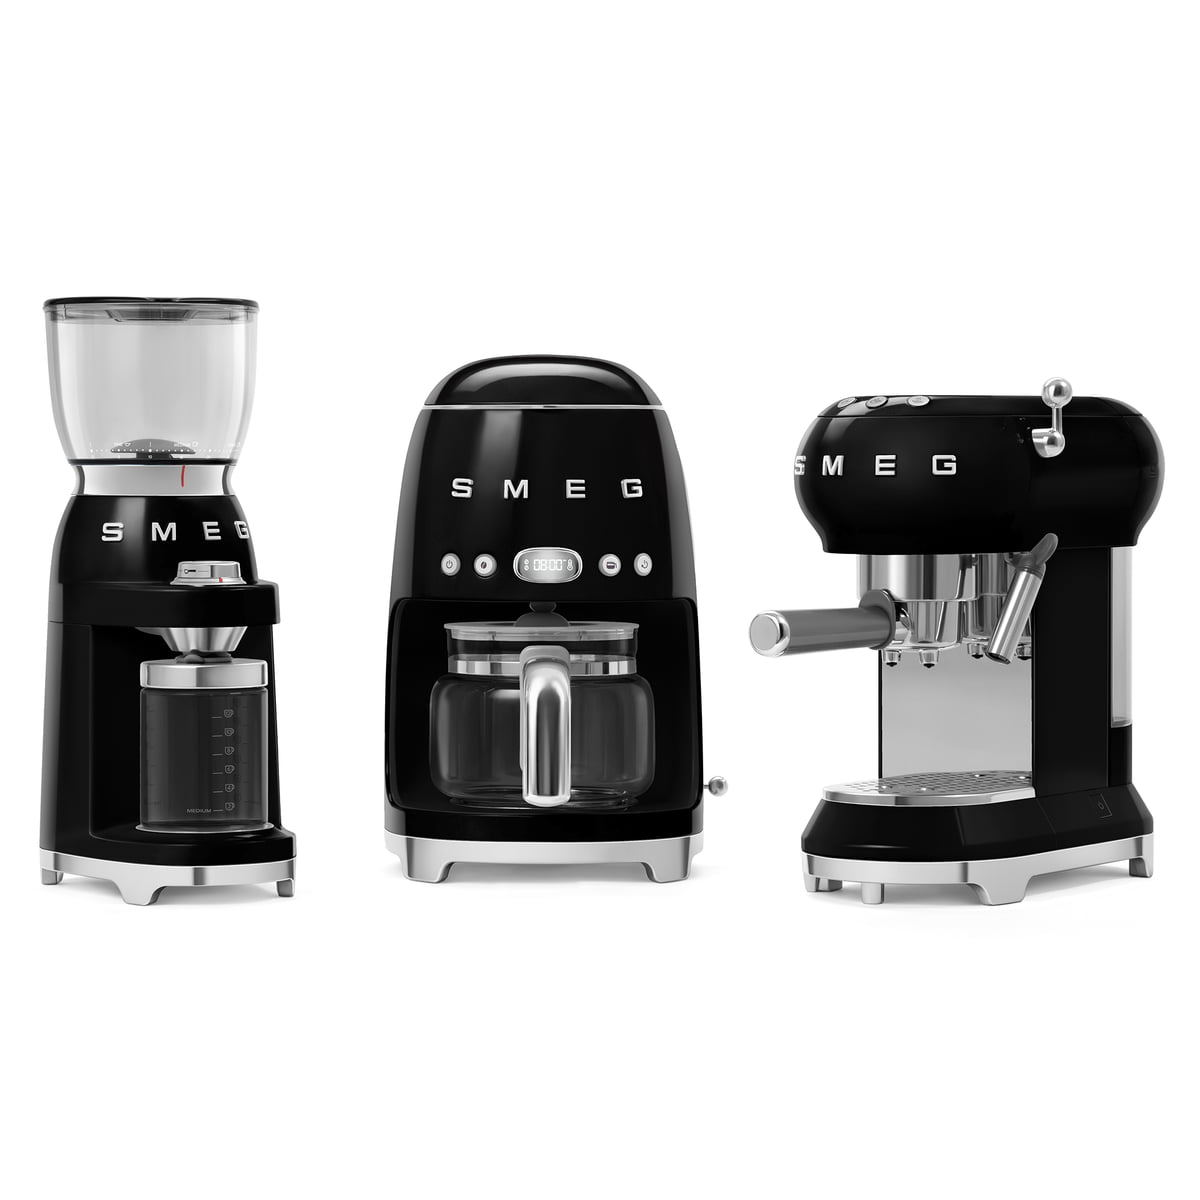 Filter maker coffee - Smeg Connox | dcf02